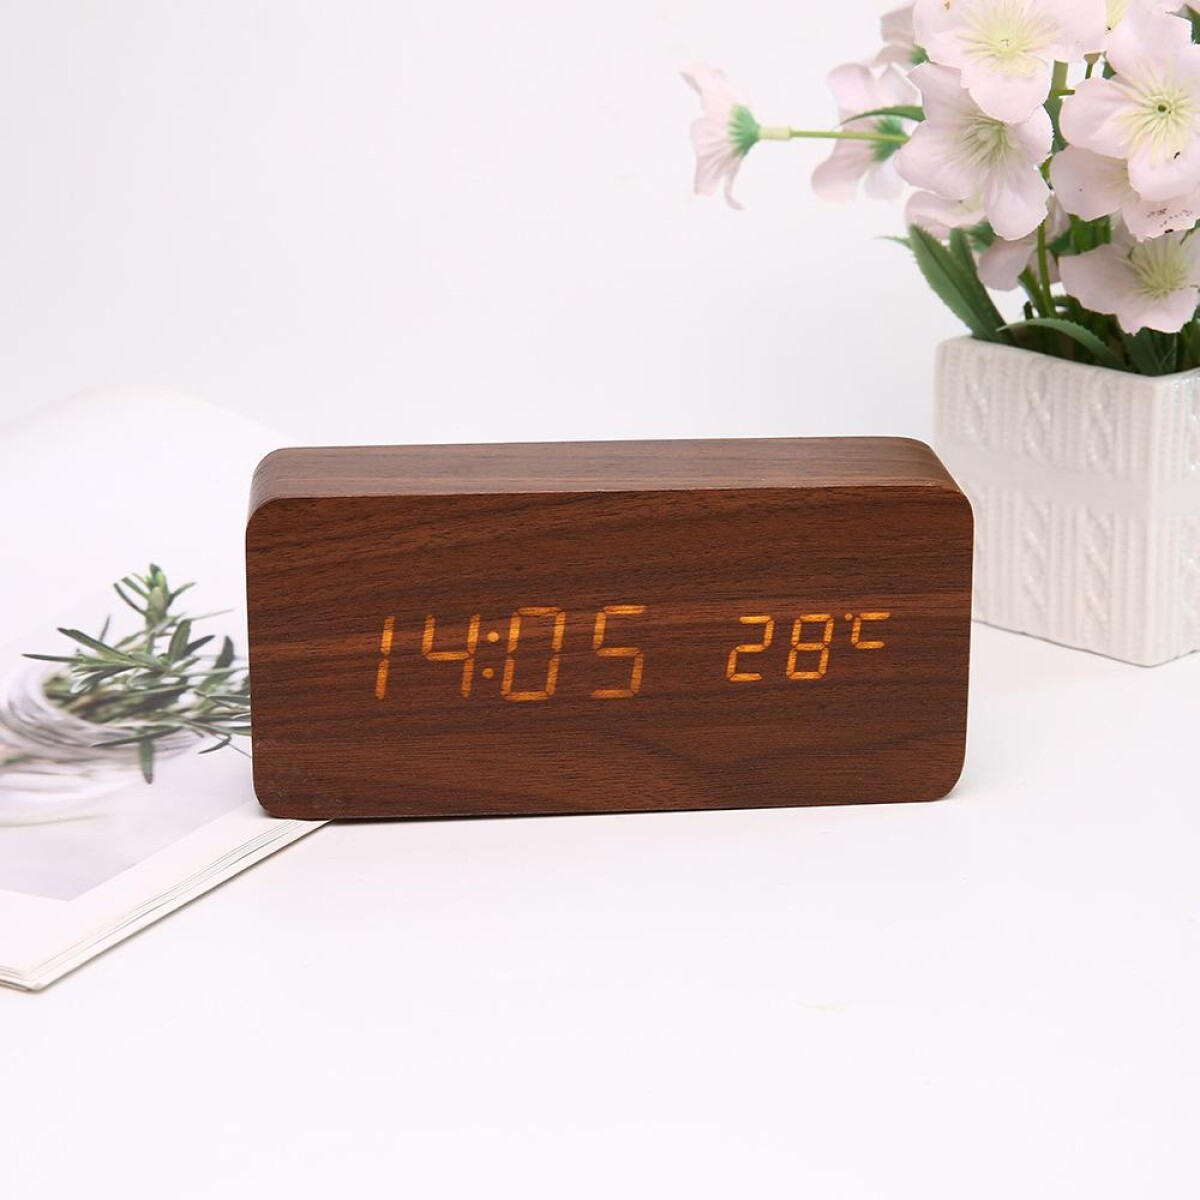 Reloj Despertador Digital Símil Madera Fecha/Temperatura 